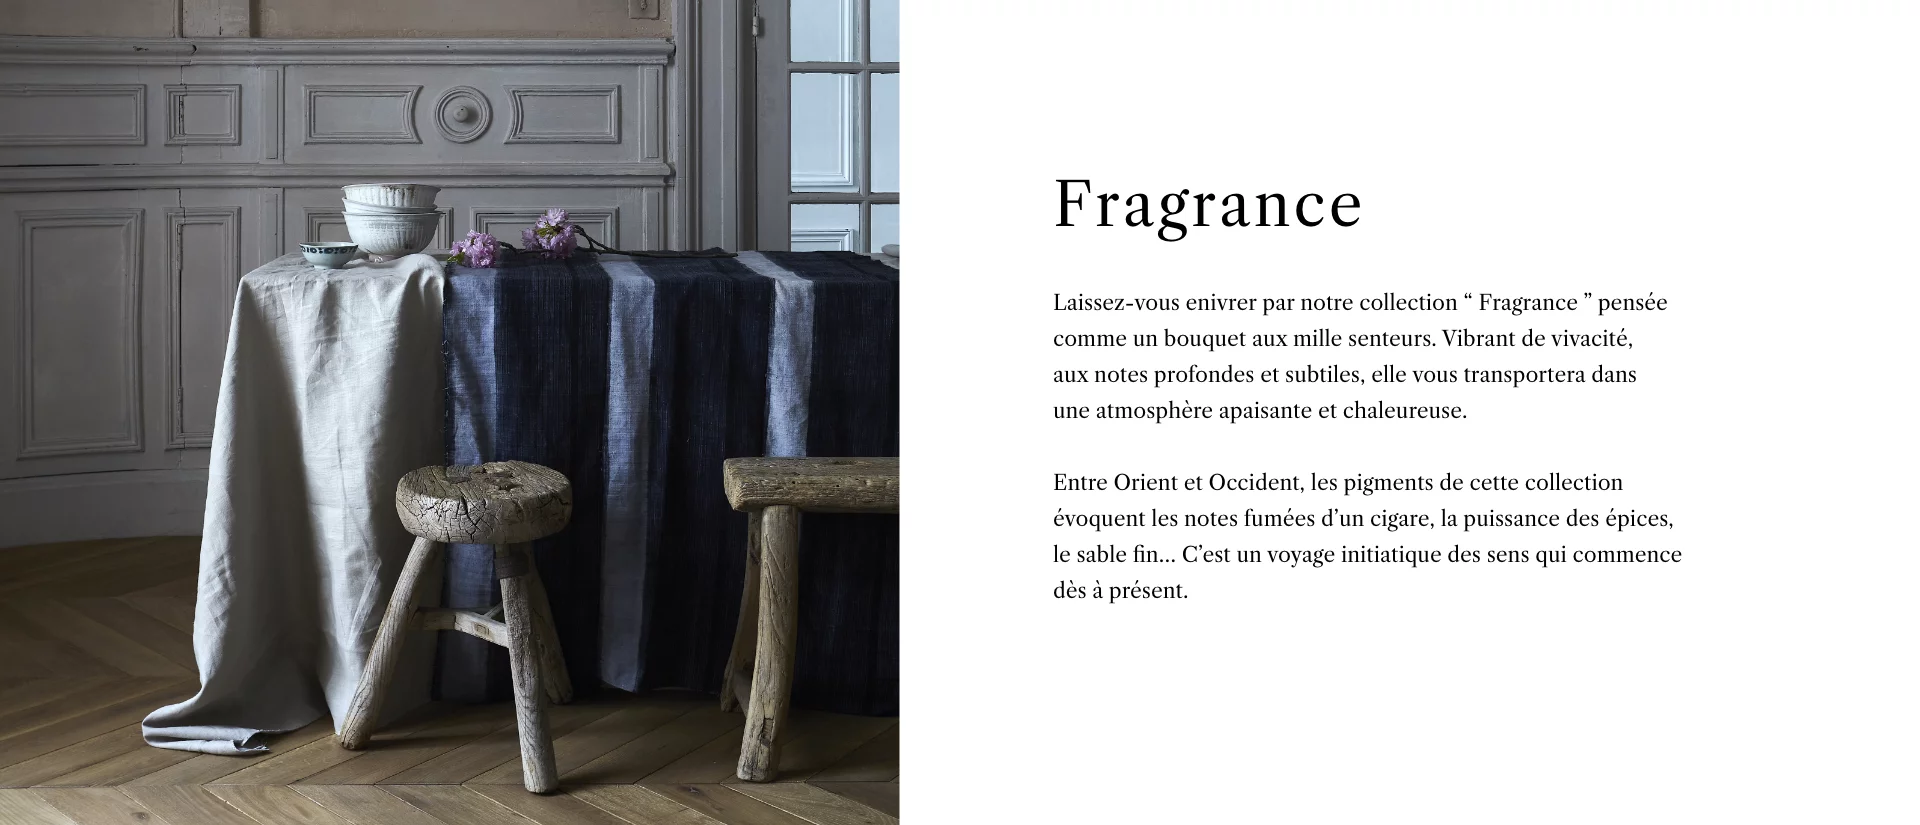 Collection Fragrance - Collection - Description